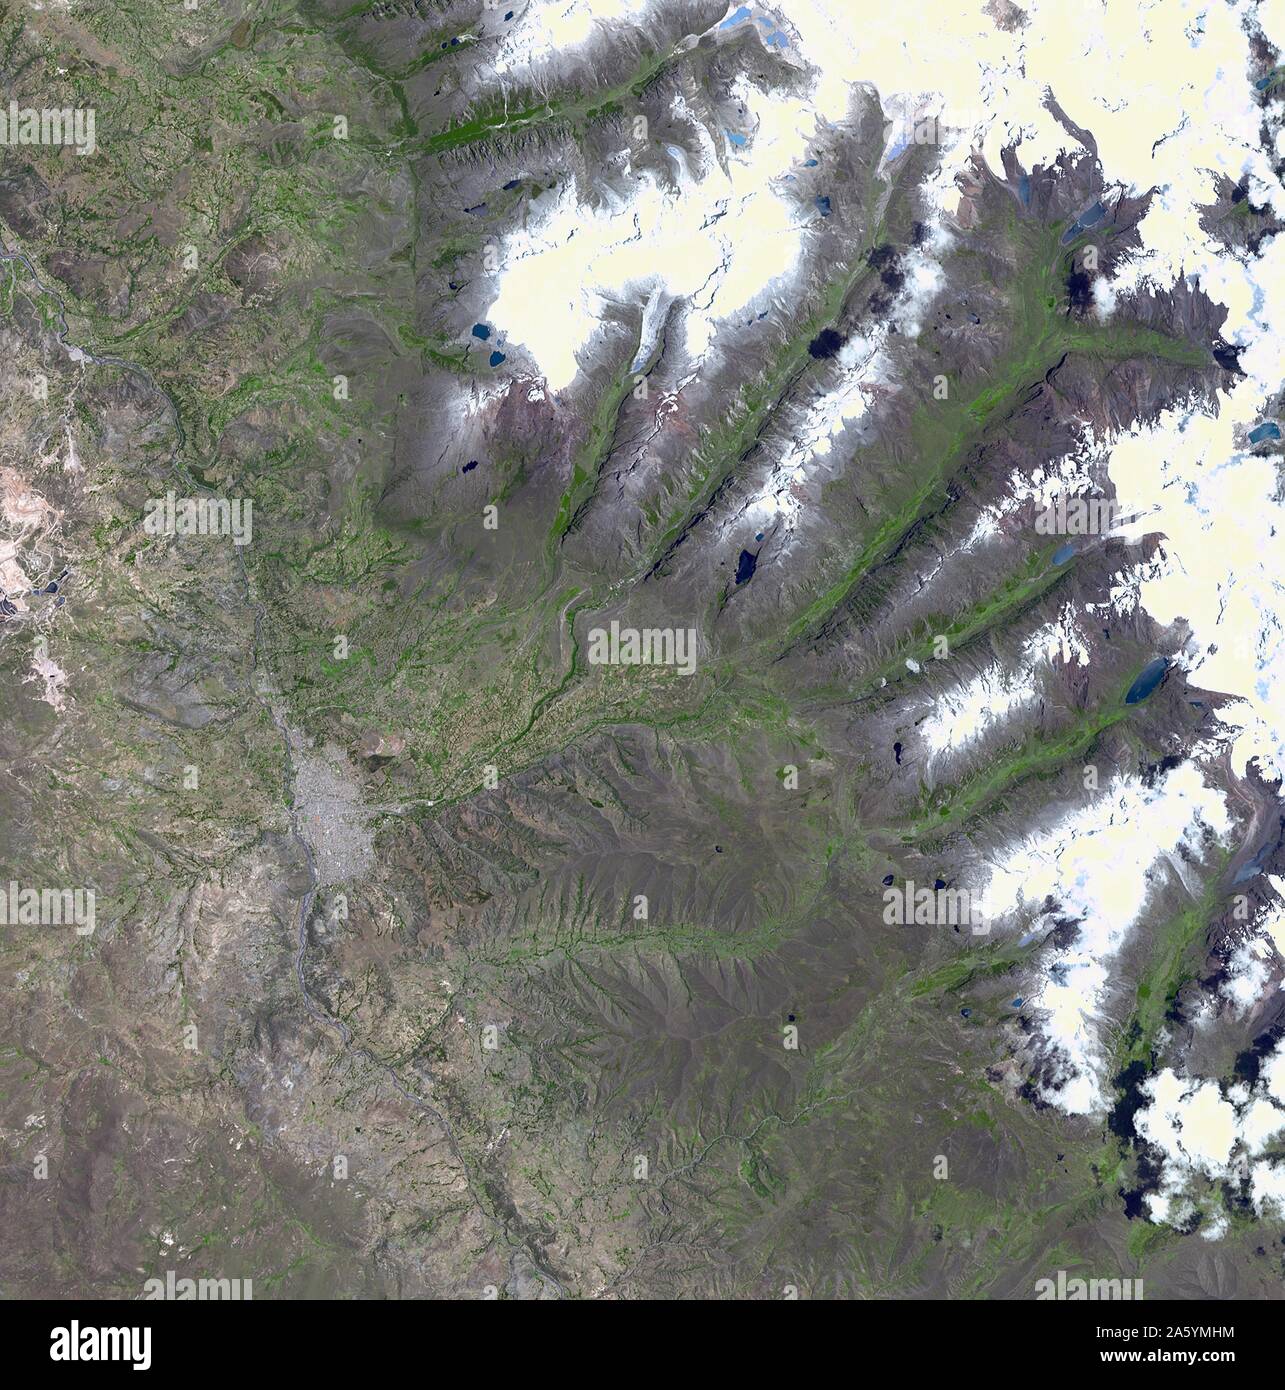 Un morceau de glacier, menaçant de tomber dans un lac andin et causer d'importantes inondations dans la ville péruvienne de 60 000. Le 5 novembre 2001. Image satellite. Banque D'Images